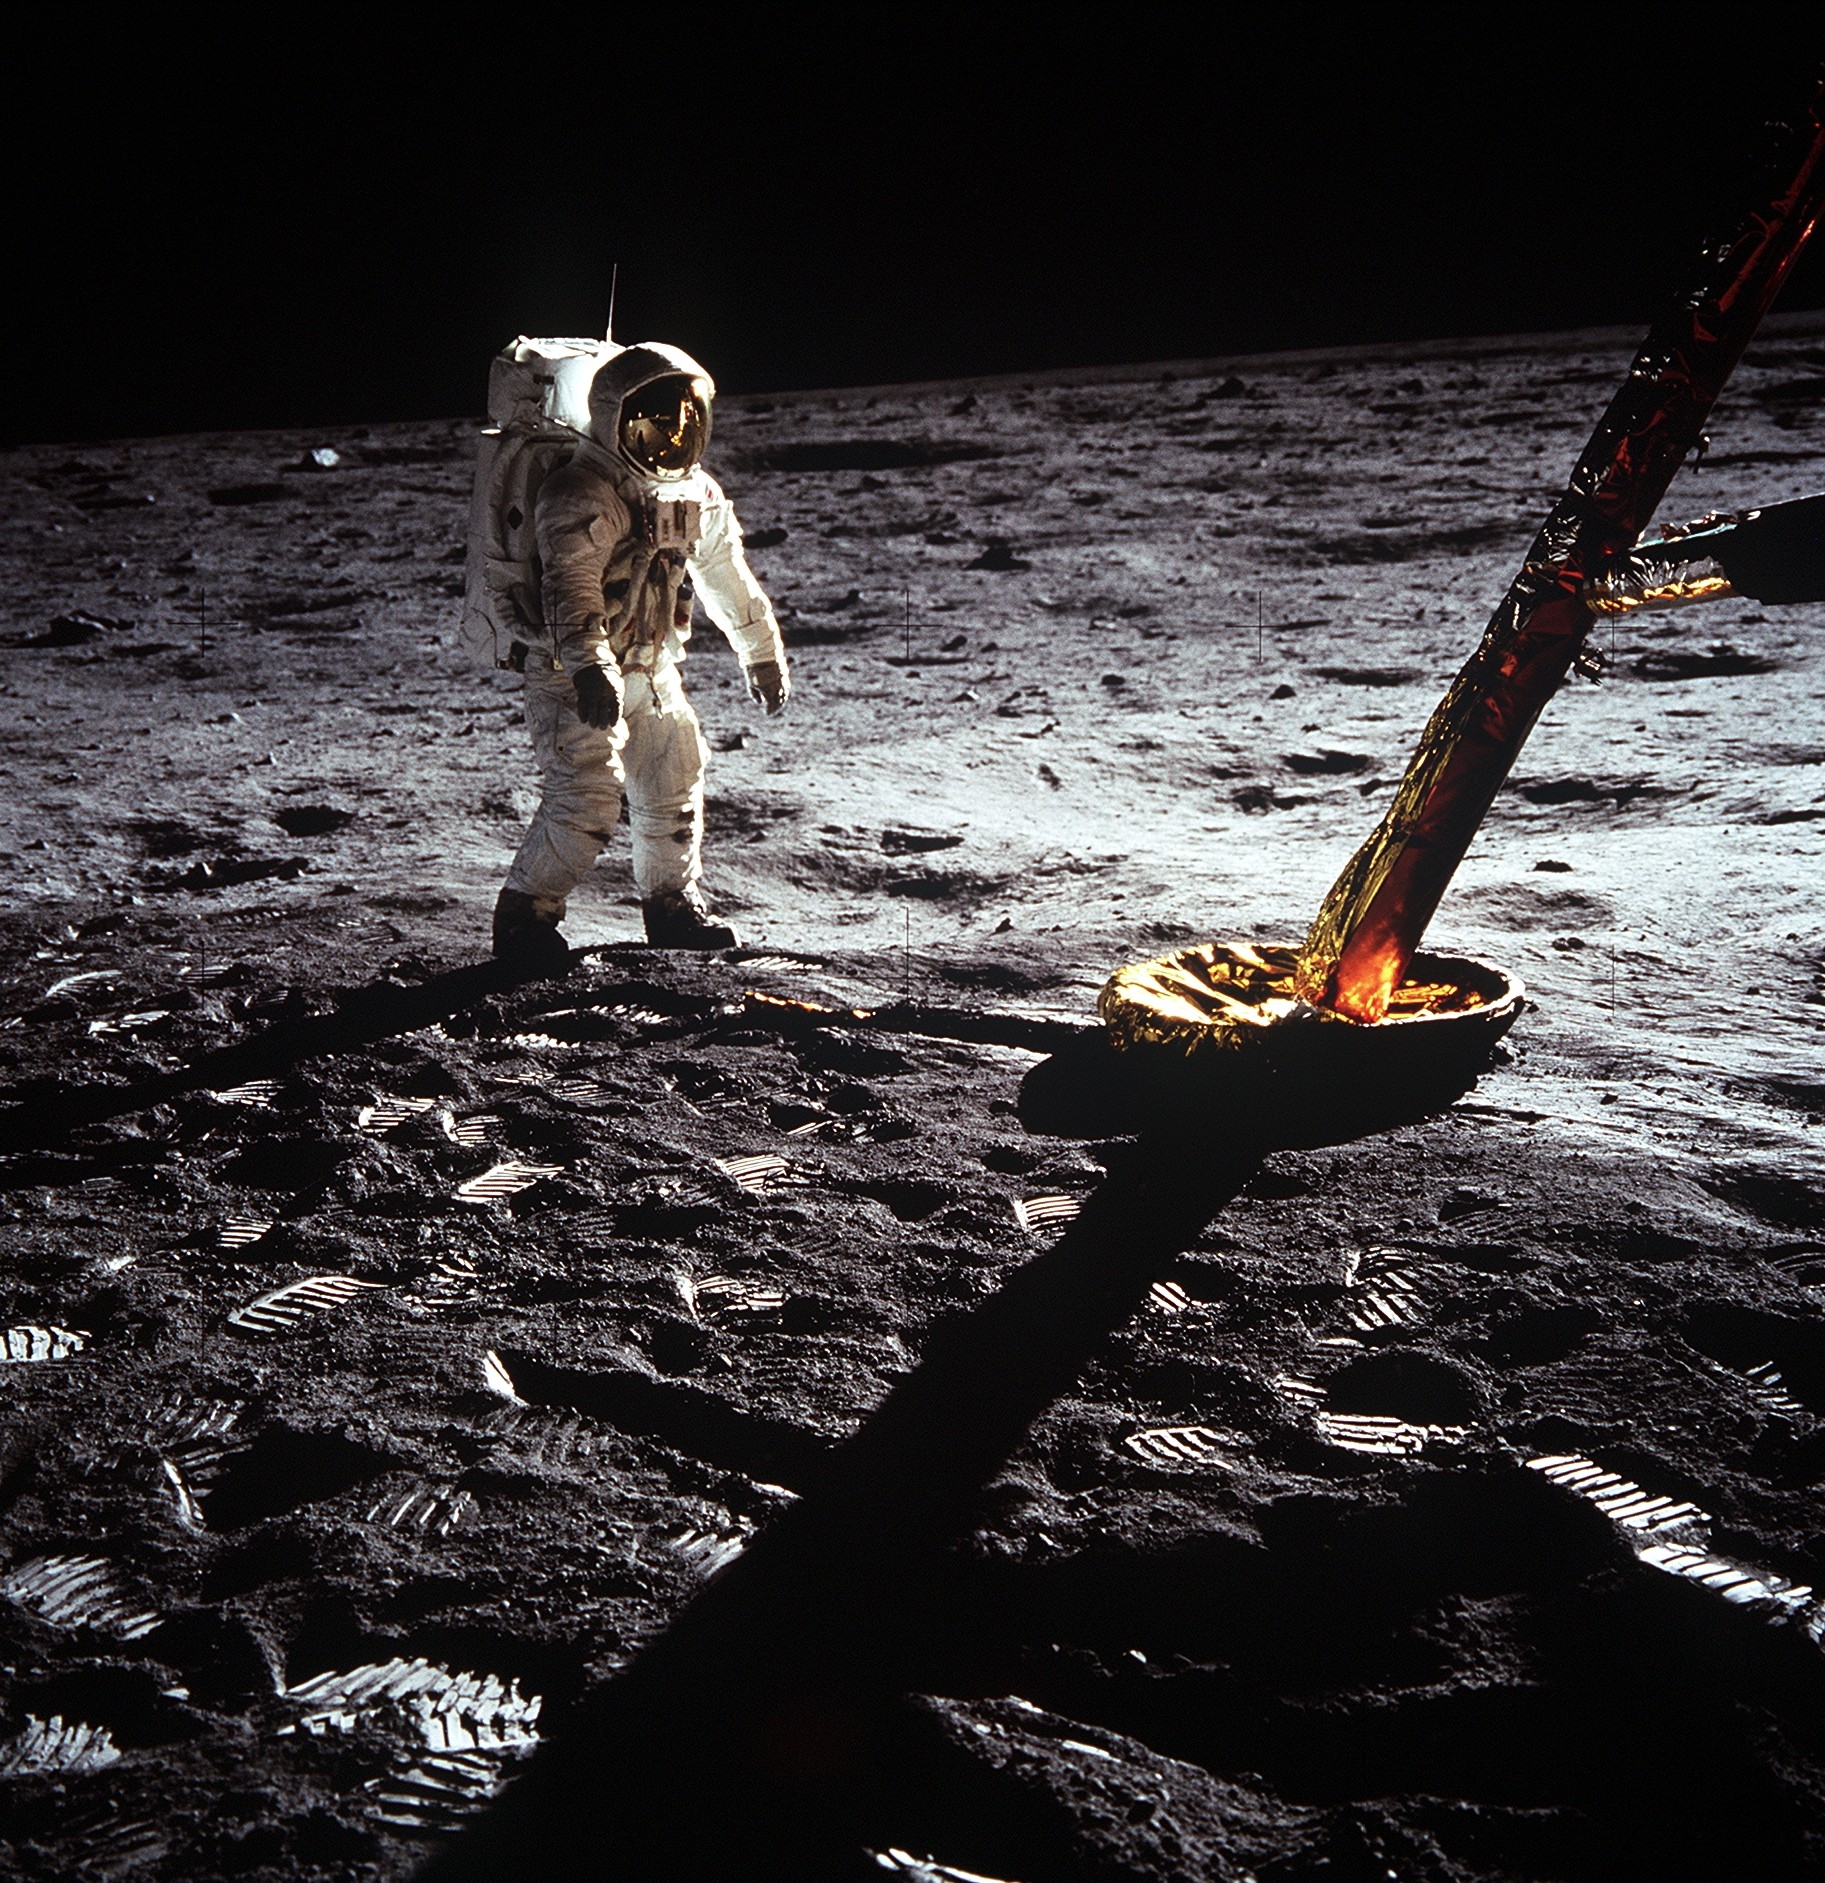 General 1825x1883 space Moon astronaut Apollo 11 NASA Neil Armstrong